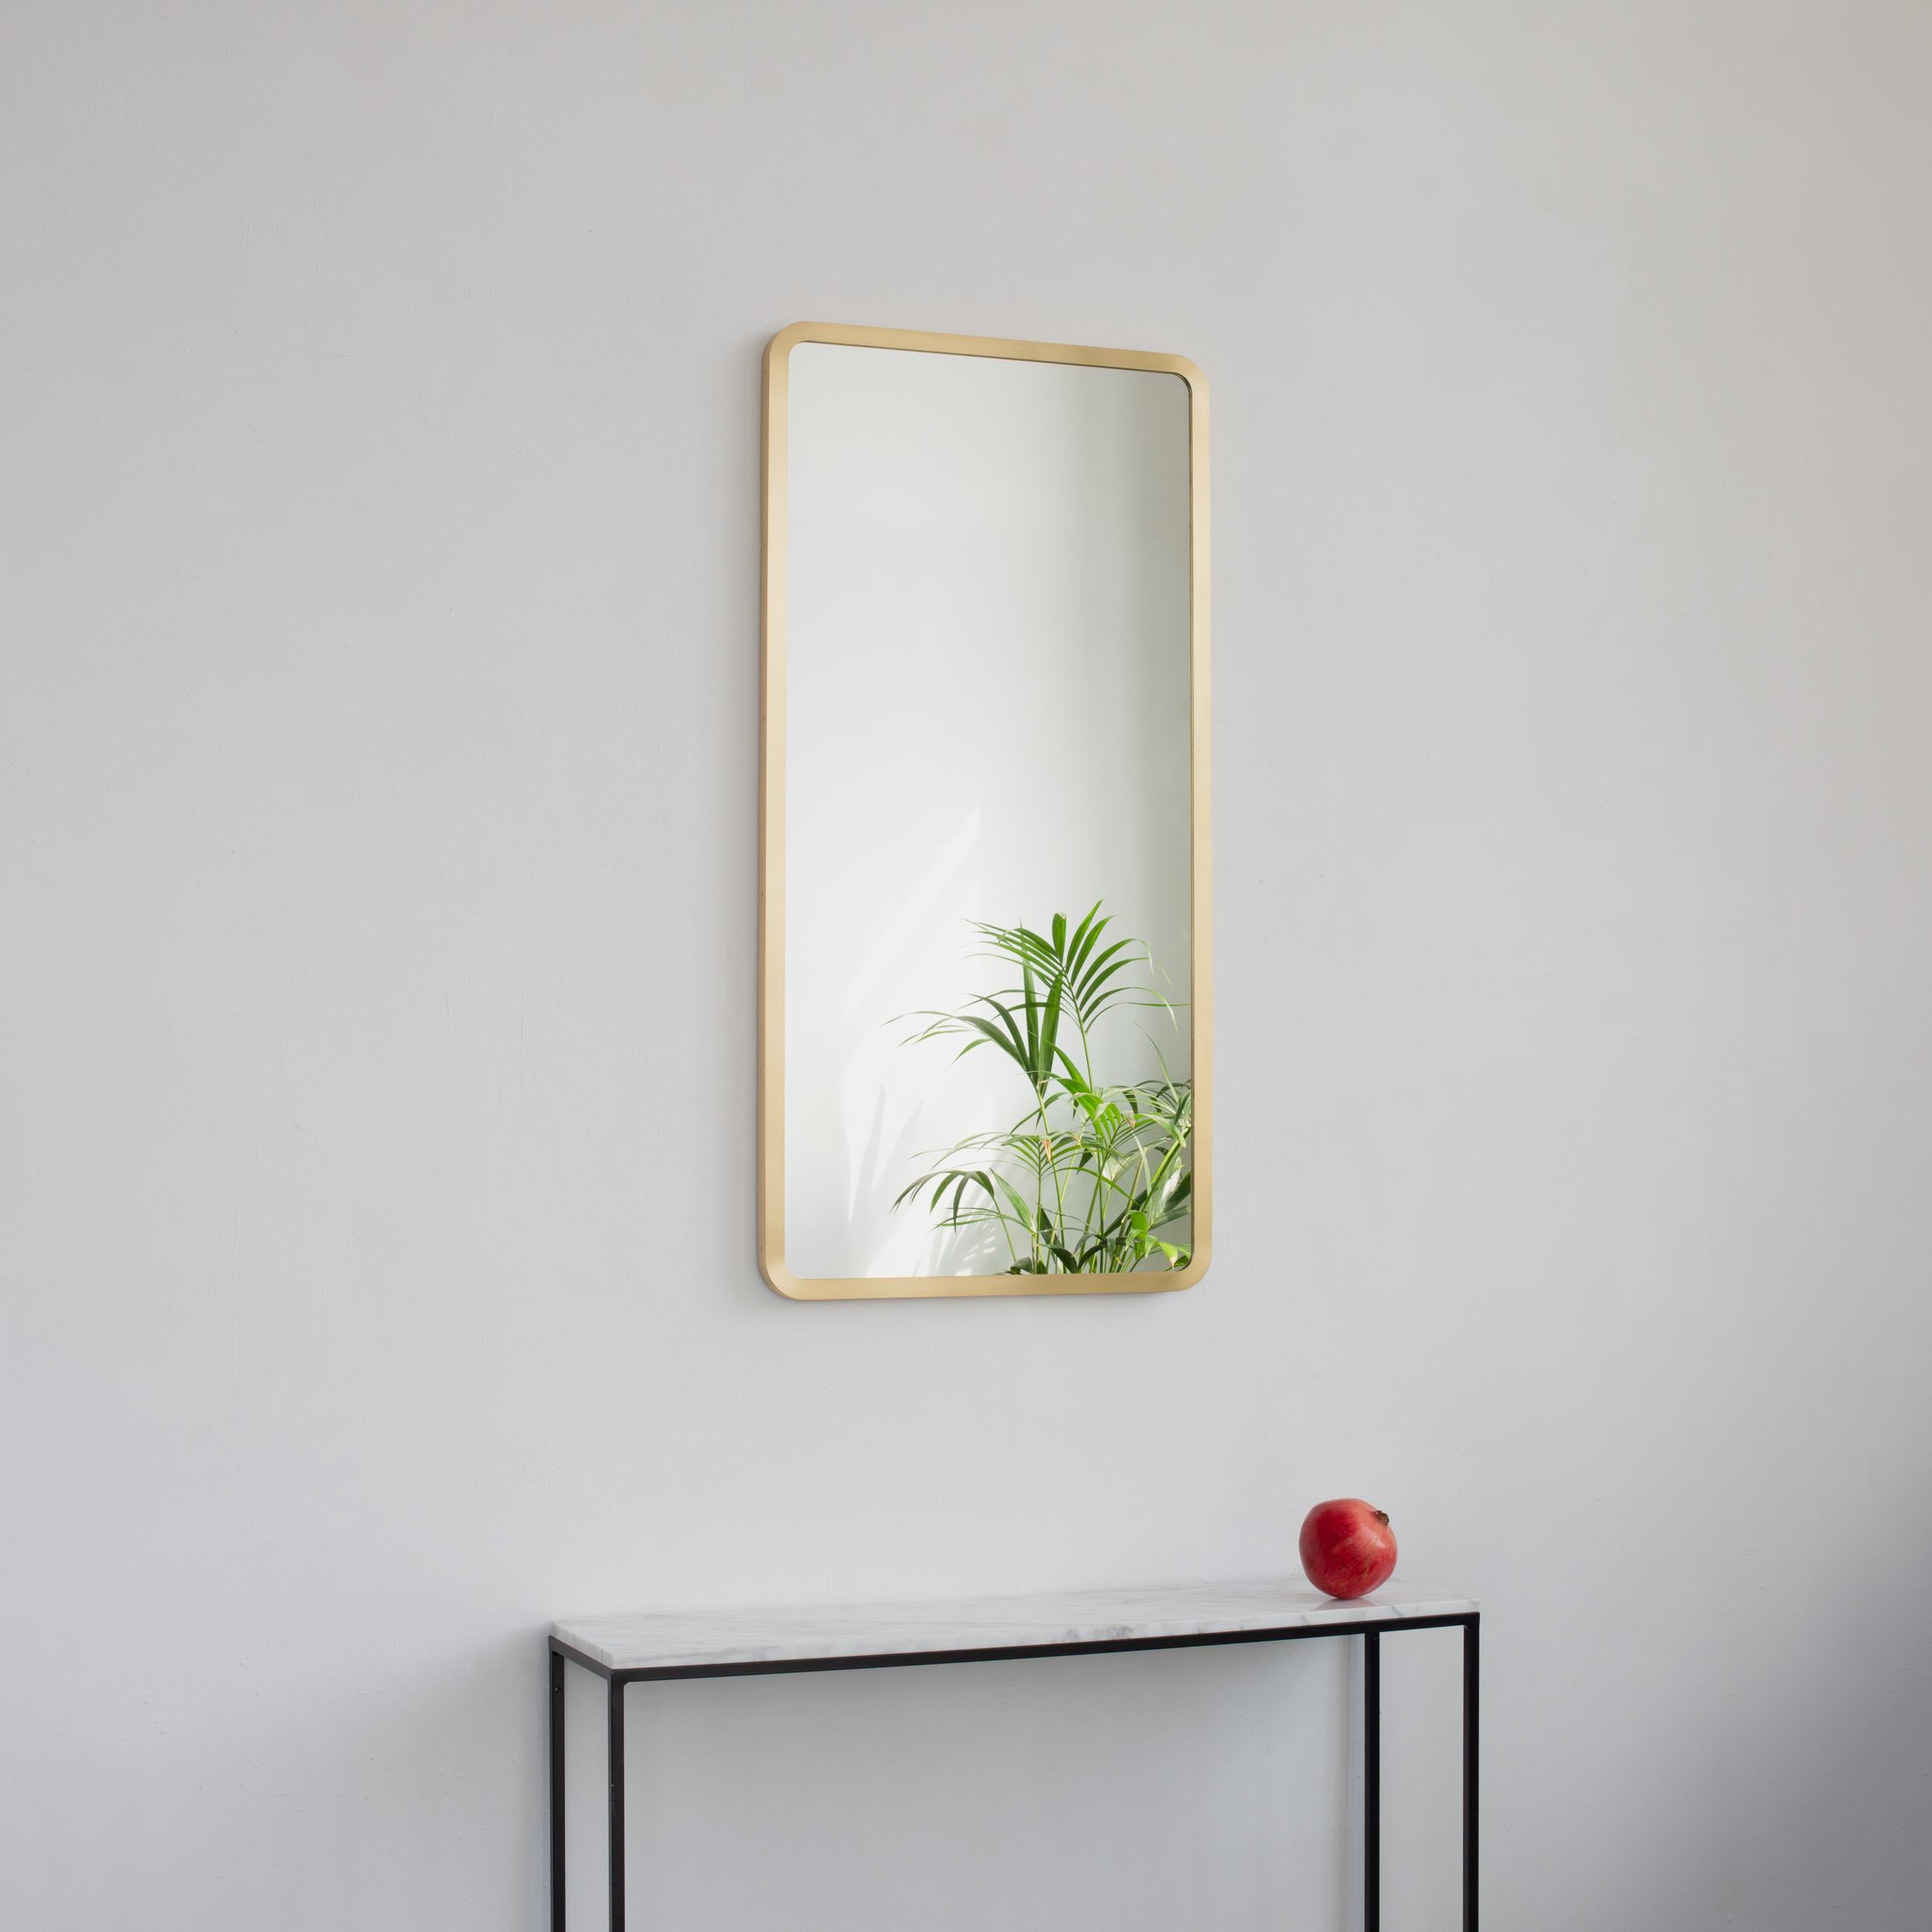 Miroir rectangulaire moderne avec un élégant cadre en laiton massif brossé.  Une partie de la charmante collection Quadris™, conçue et fabriquée à la main à Londres, au Royaume-Uni. 

Notre tout nouveau design 